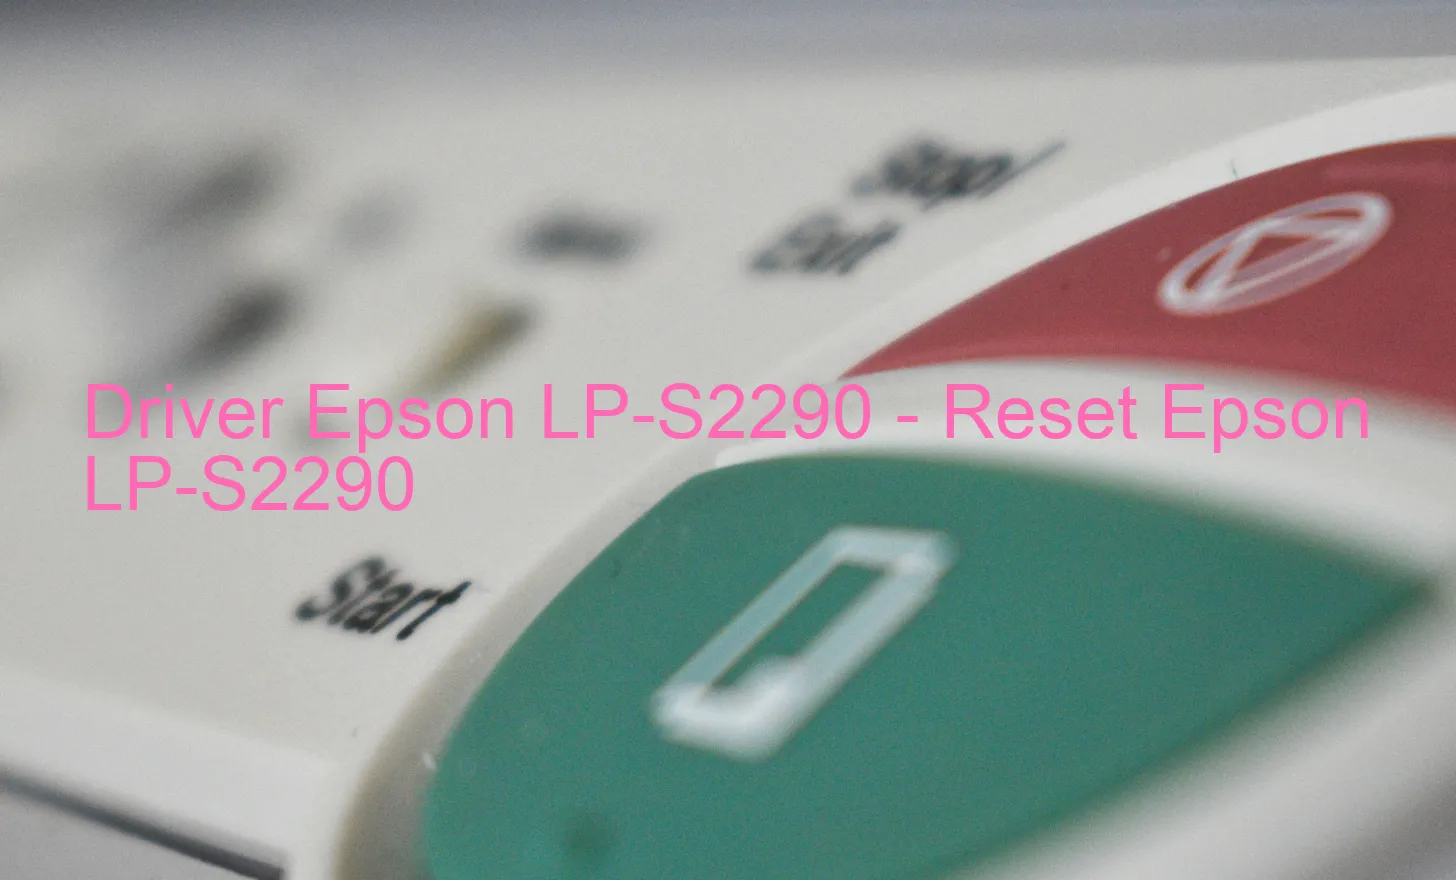 Epson LP-S2290のドライバー、Epson LP-S2290のリセットソフトウェア